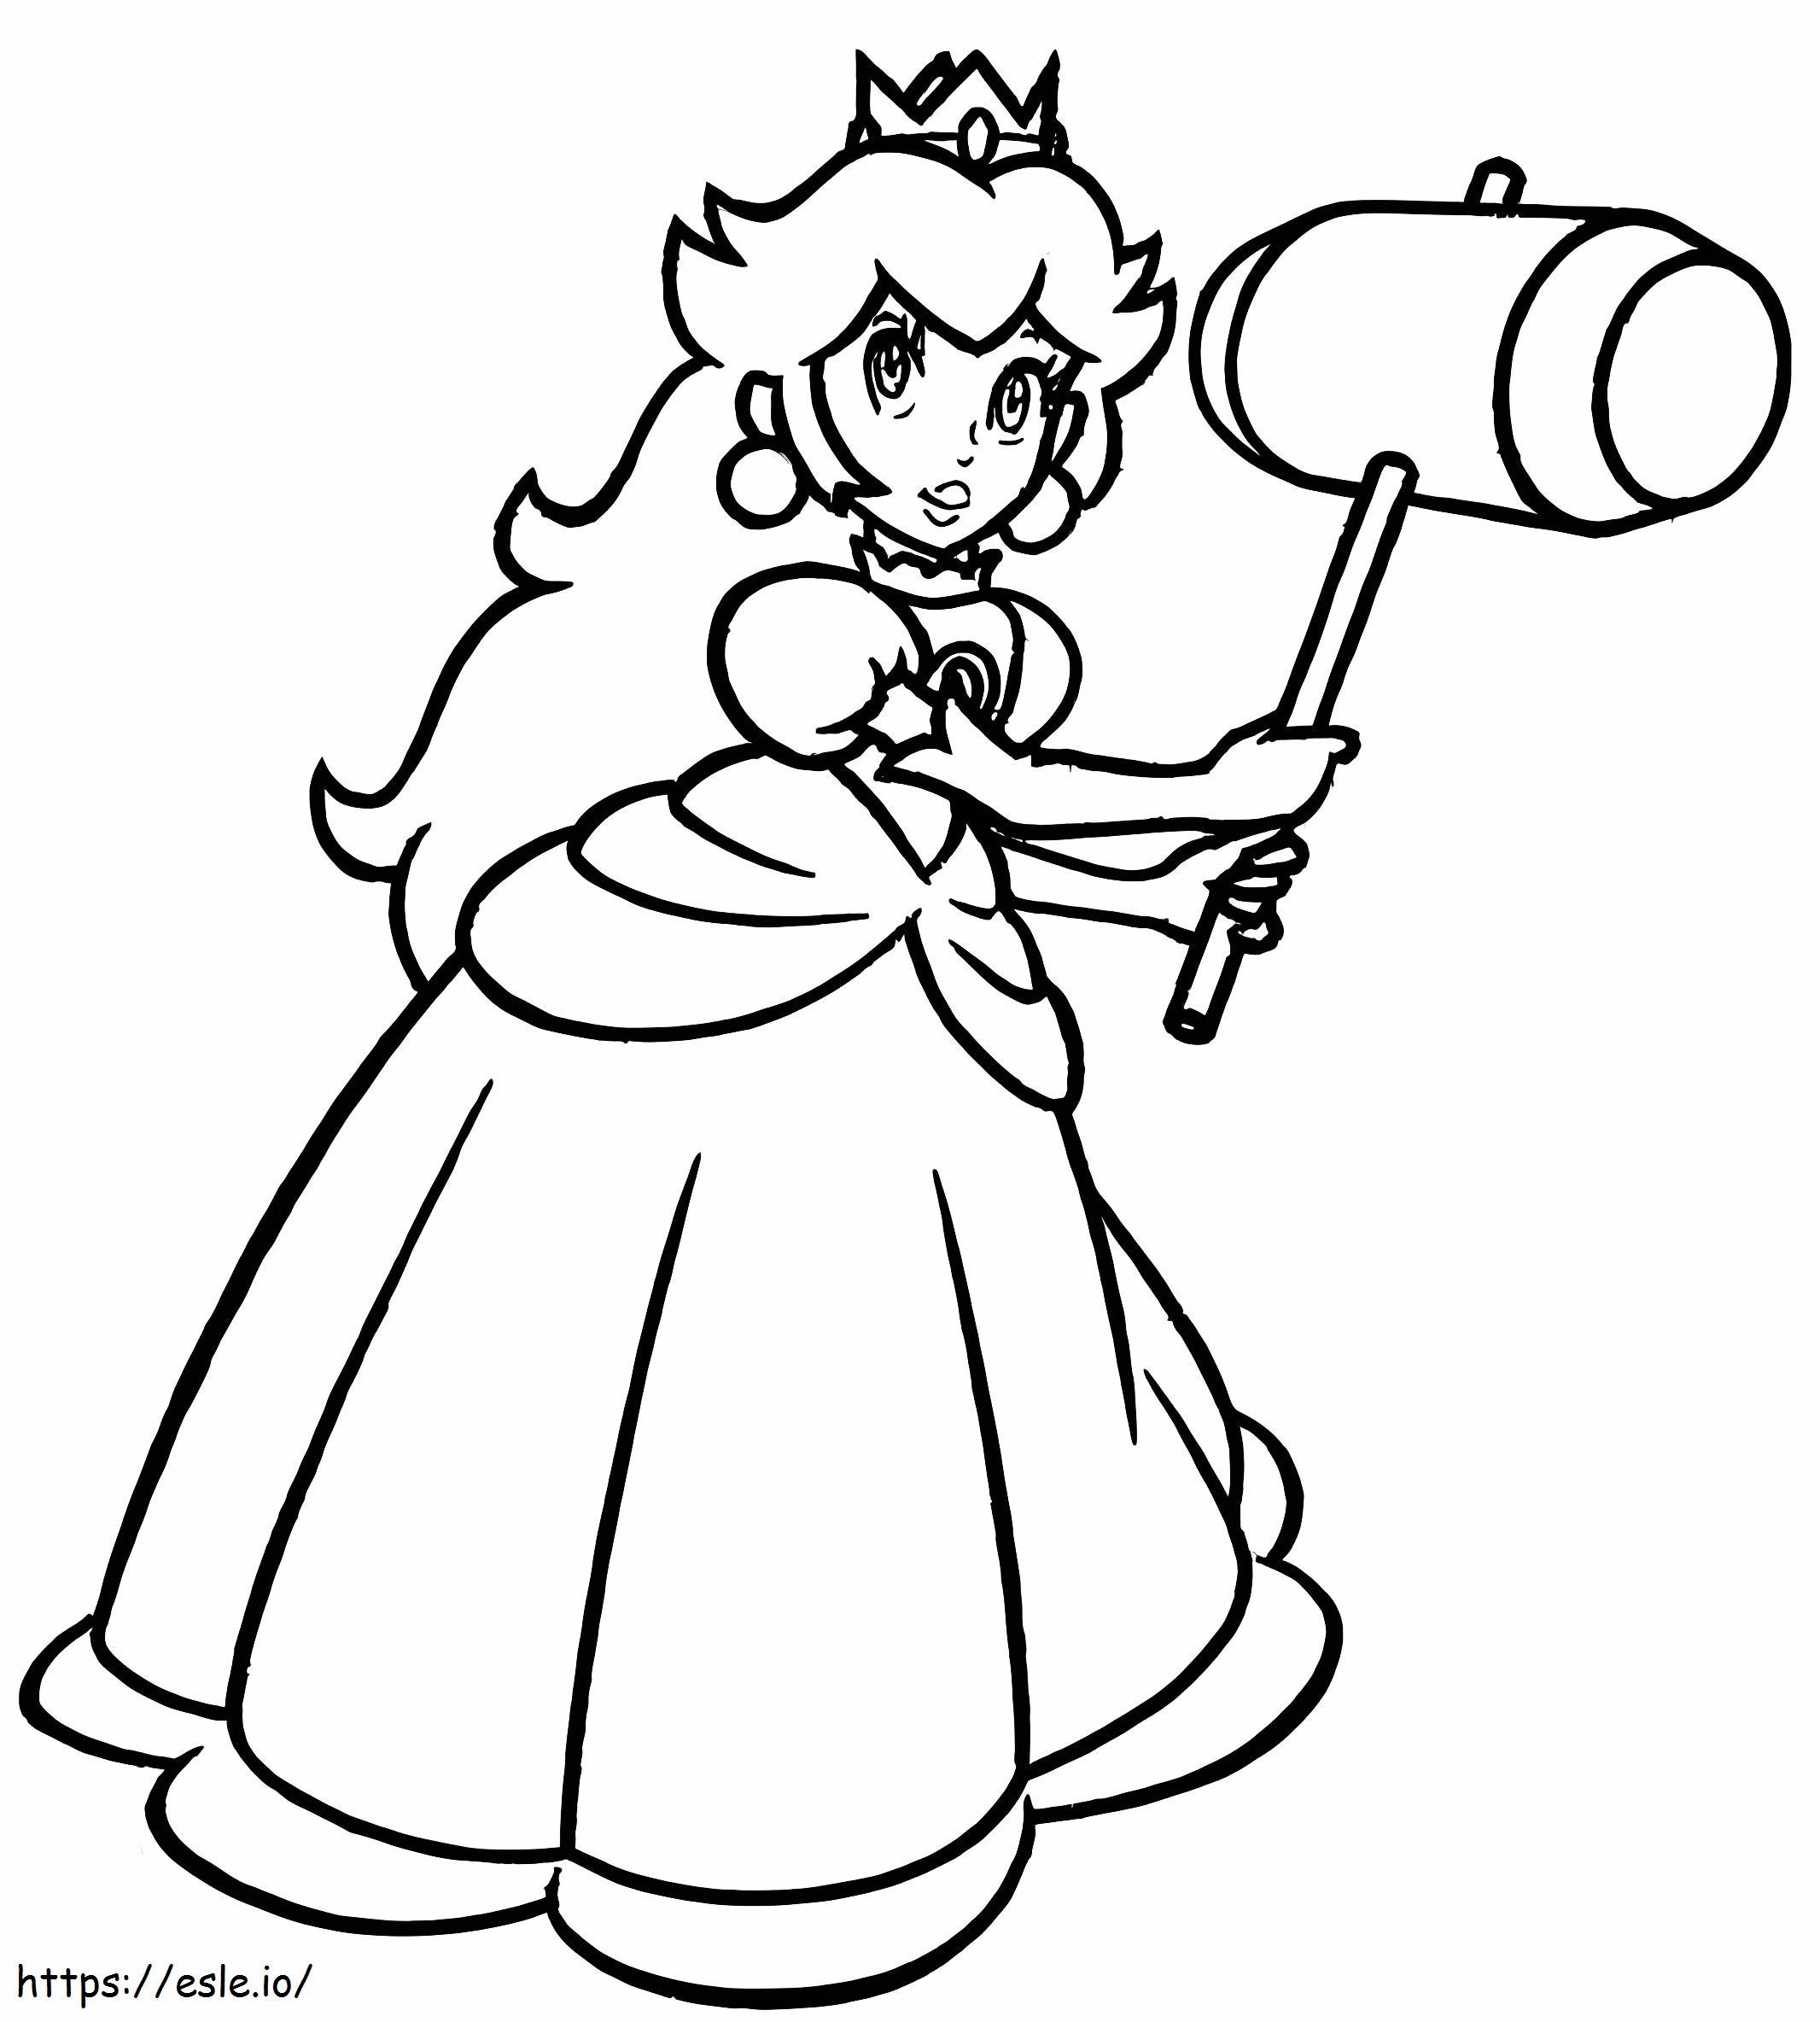 Prinzessin Peach mit Hammer ausmalbilder